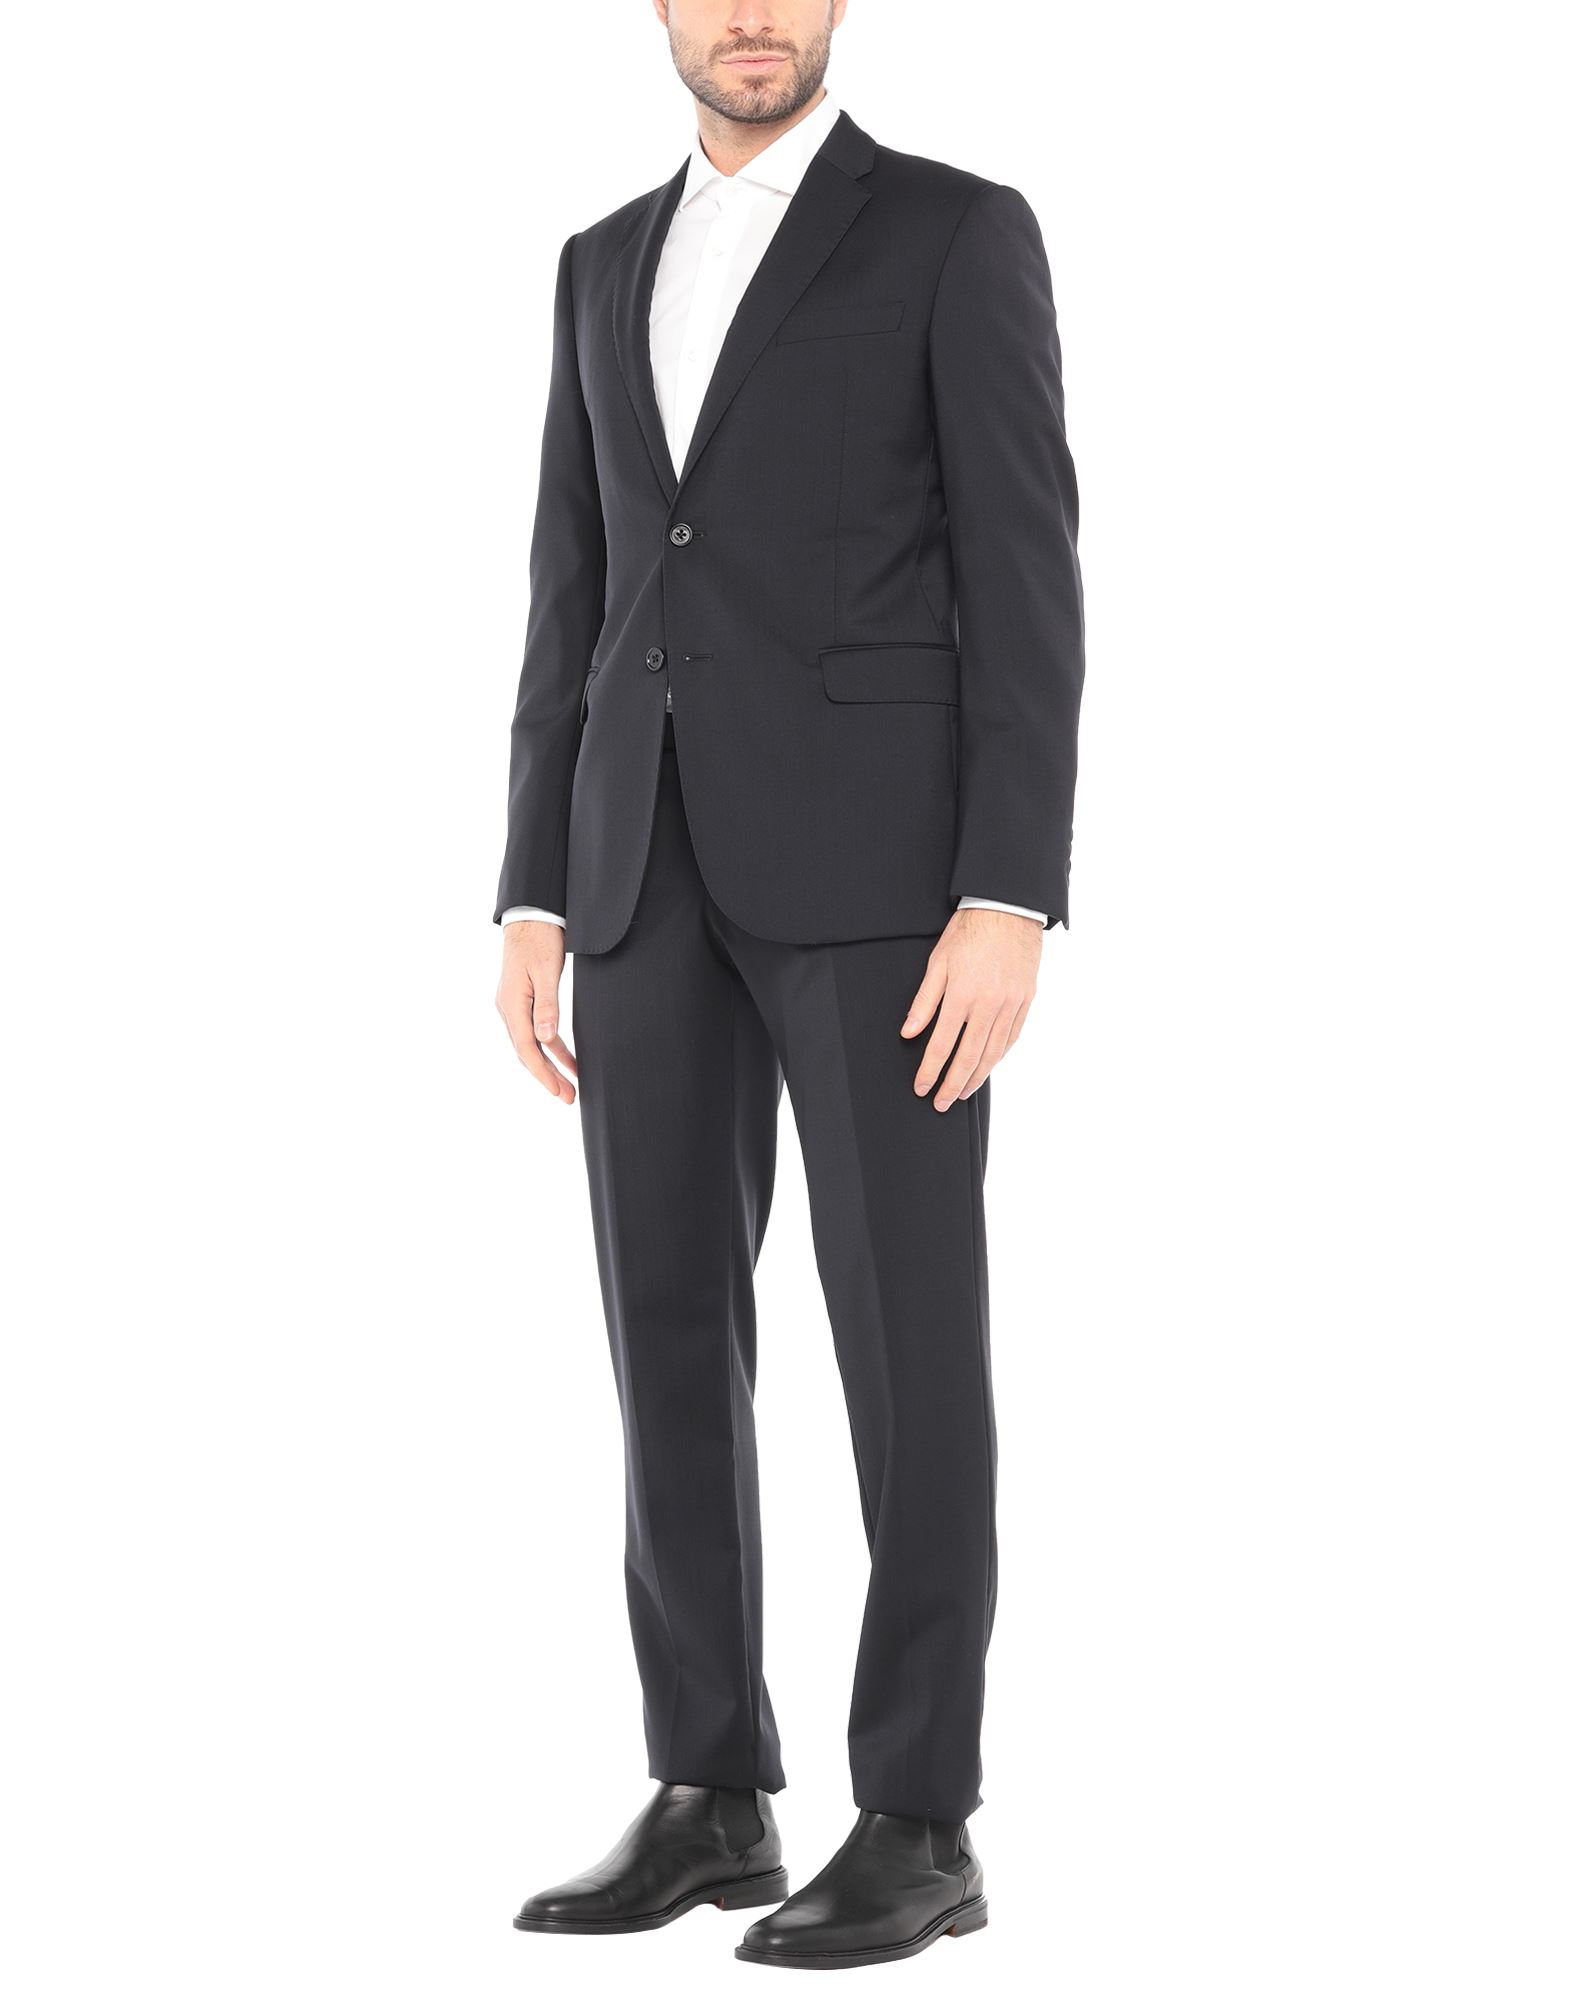 EMPORIO ARMANI Suits - Item 49564251